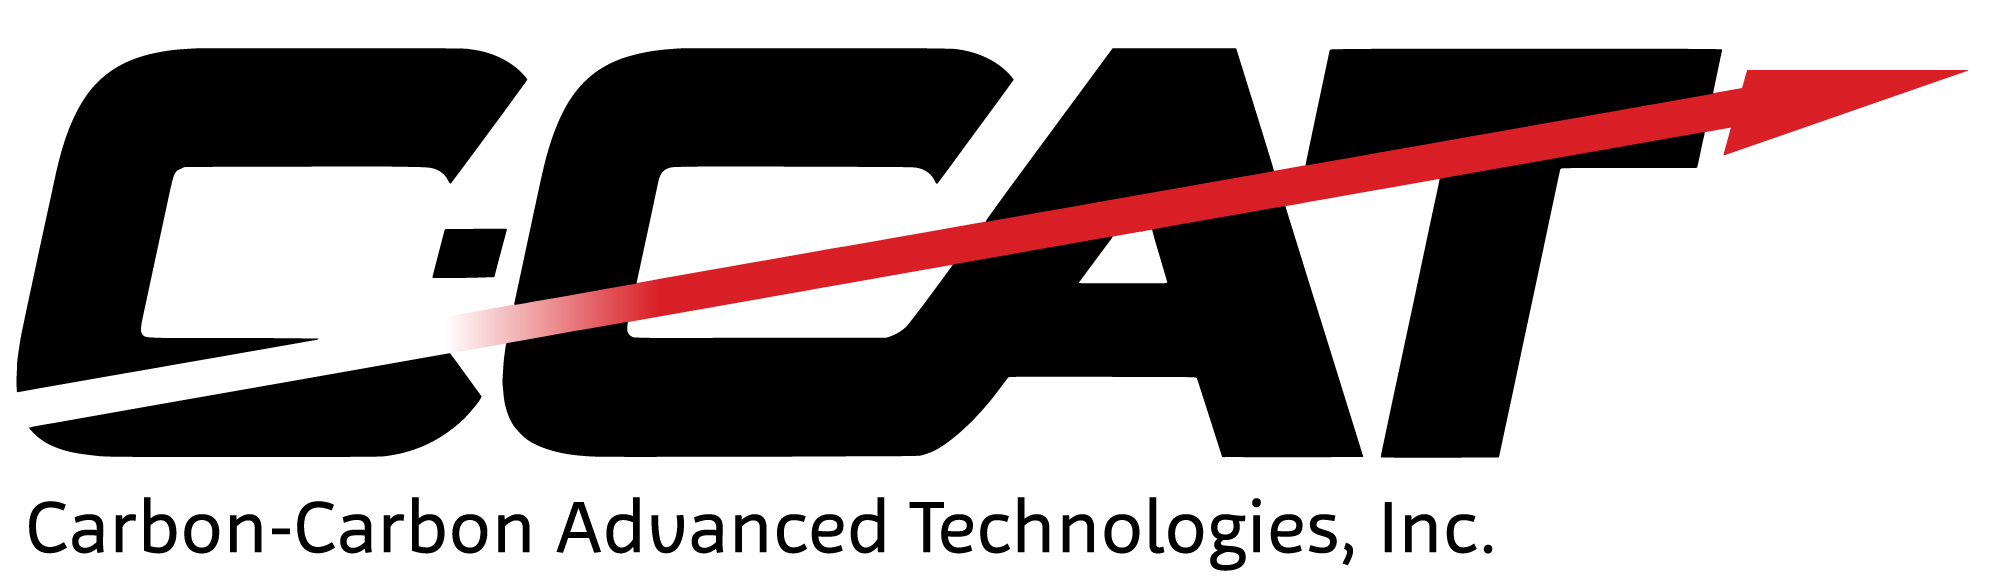 Carbon-Carbon Advanced Technologies Inc. Logo